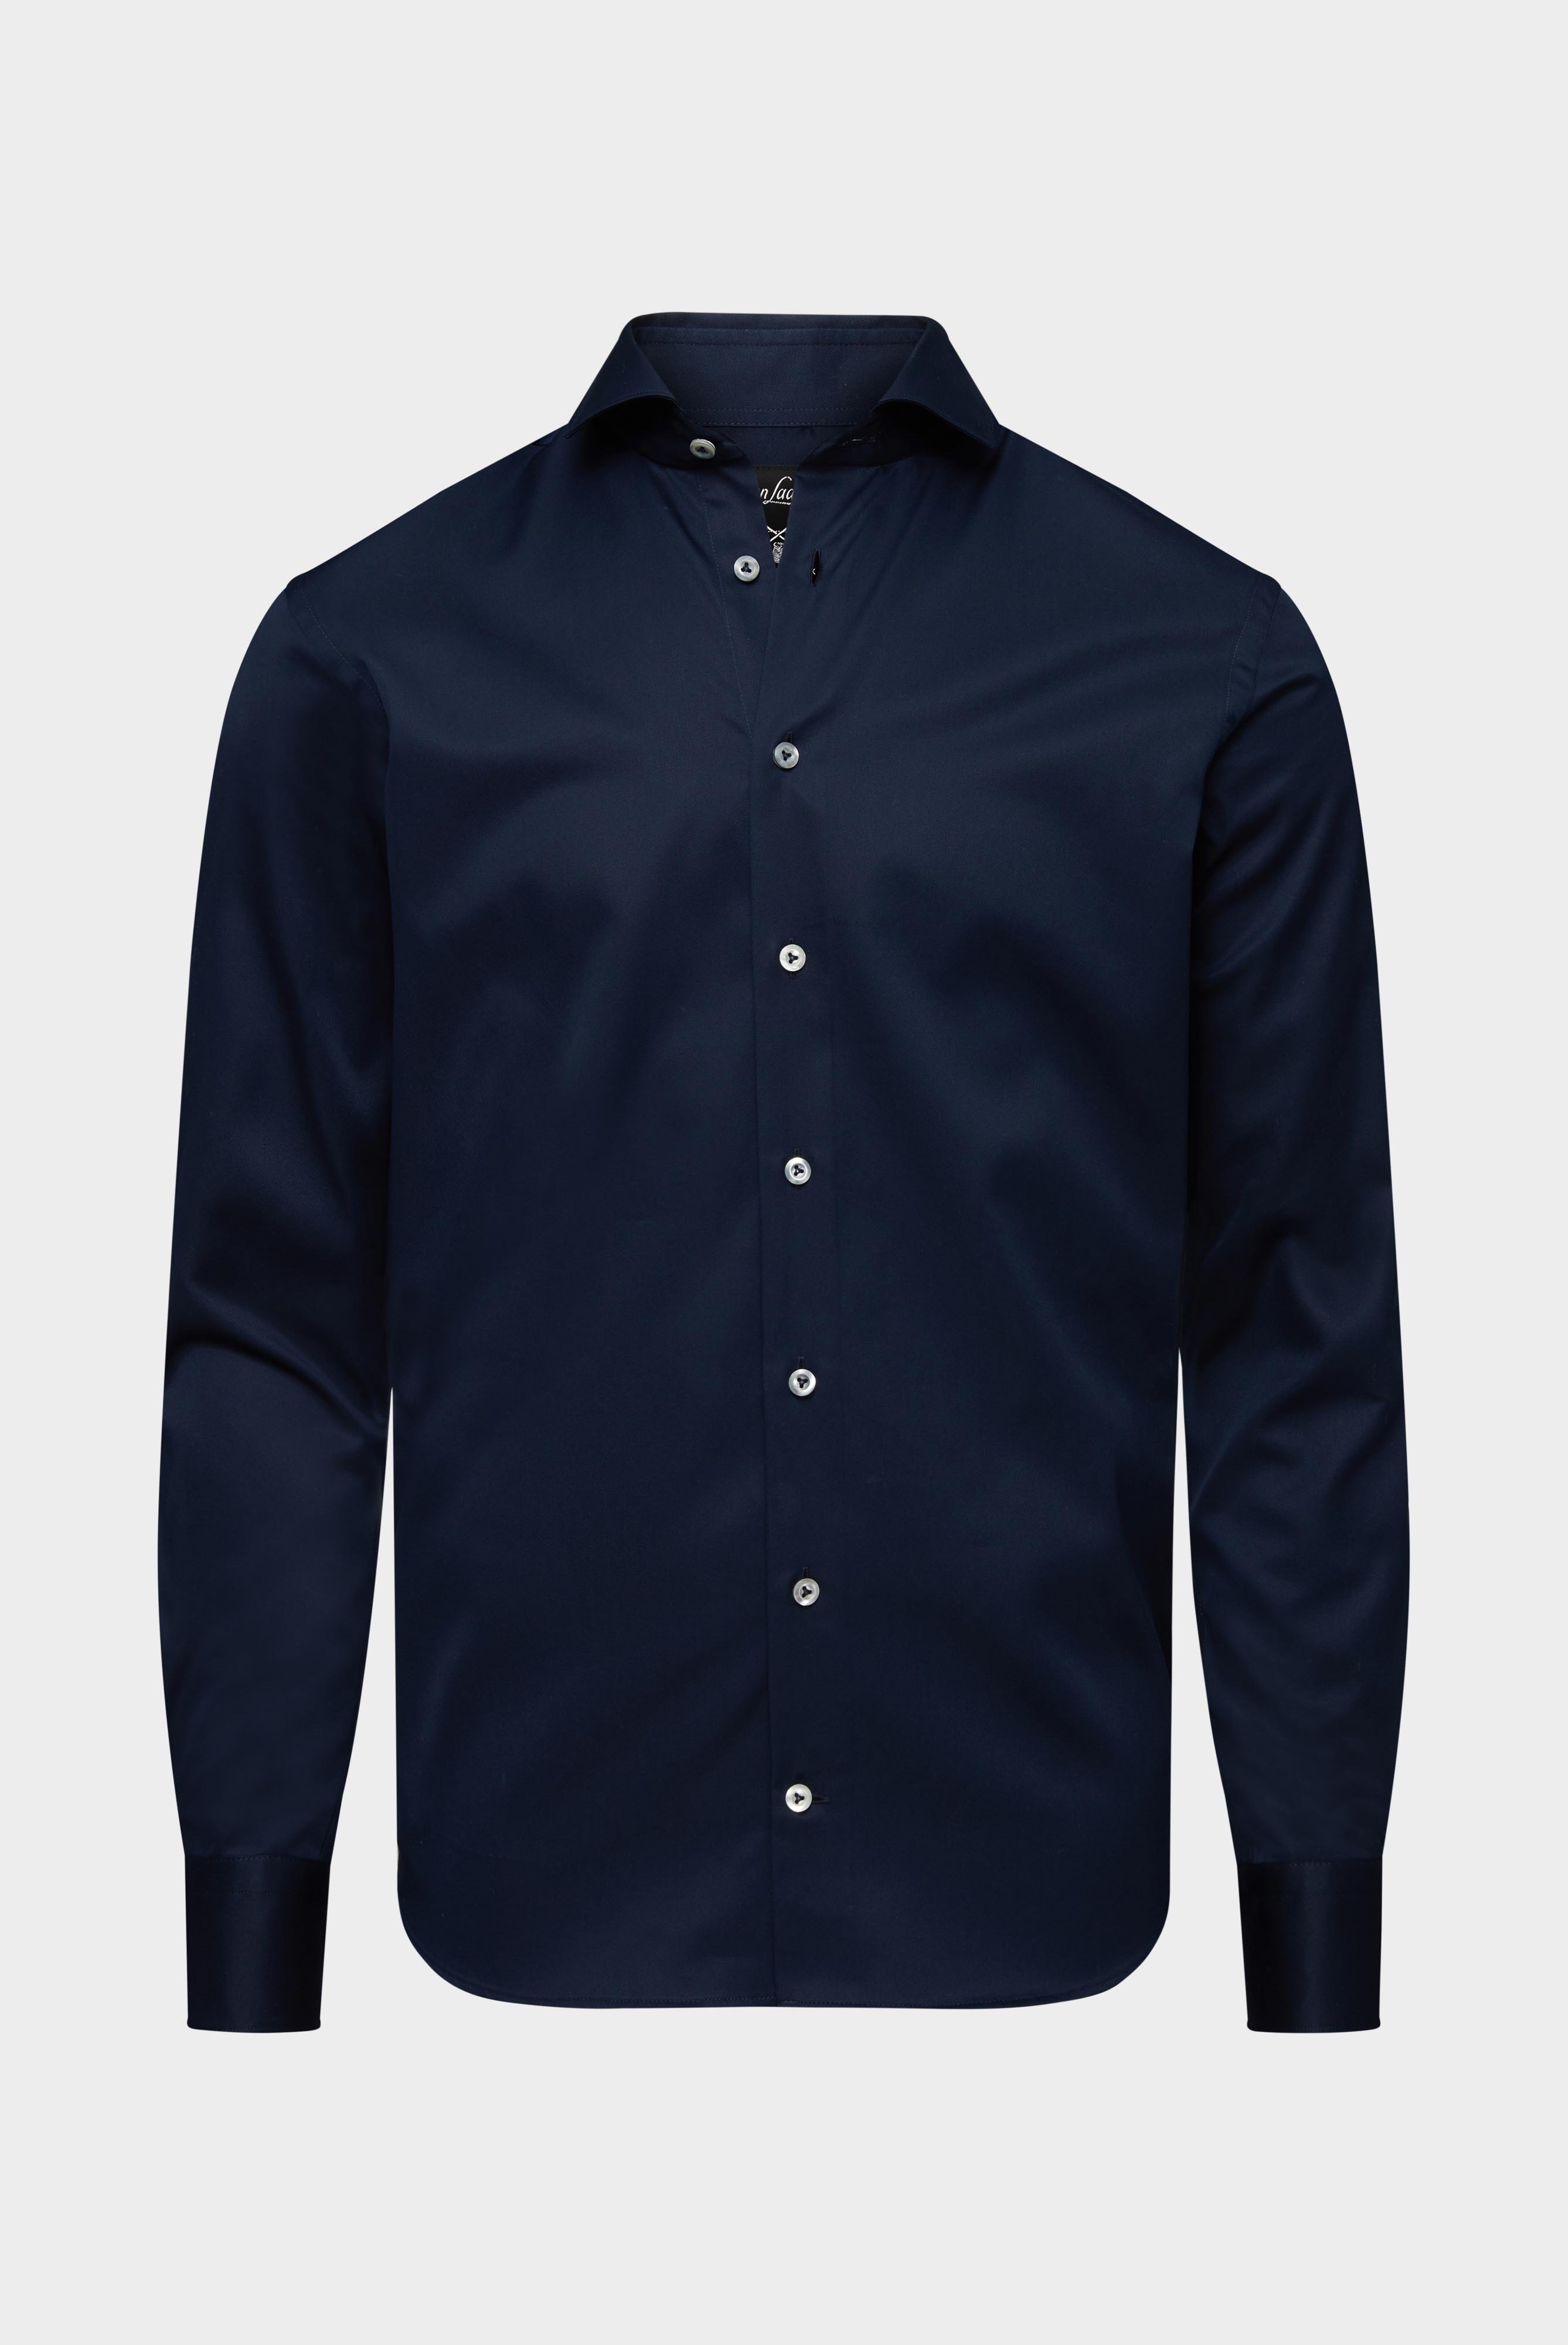 Bügelleichte Hemden+Bügelfreies Hybridshirt mit Jerseyeinsatz Slim Fit+20.2553.0F.132241.785.41